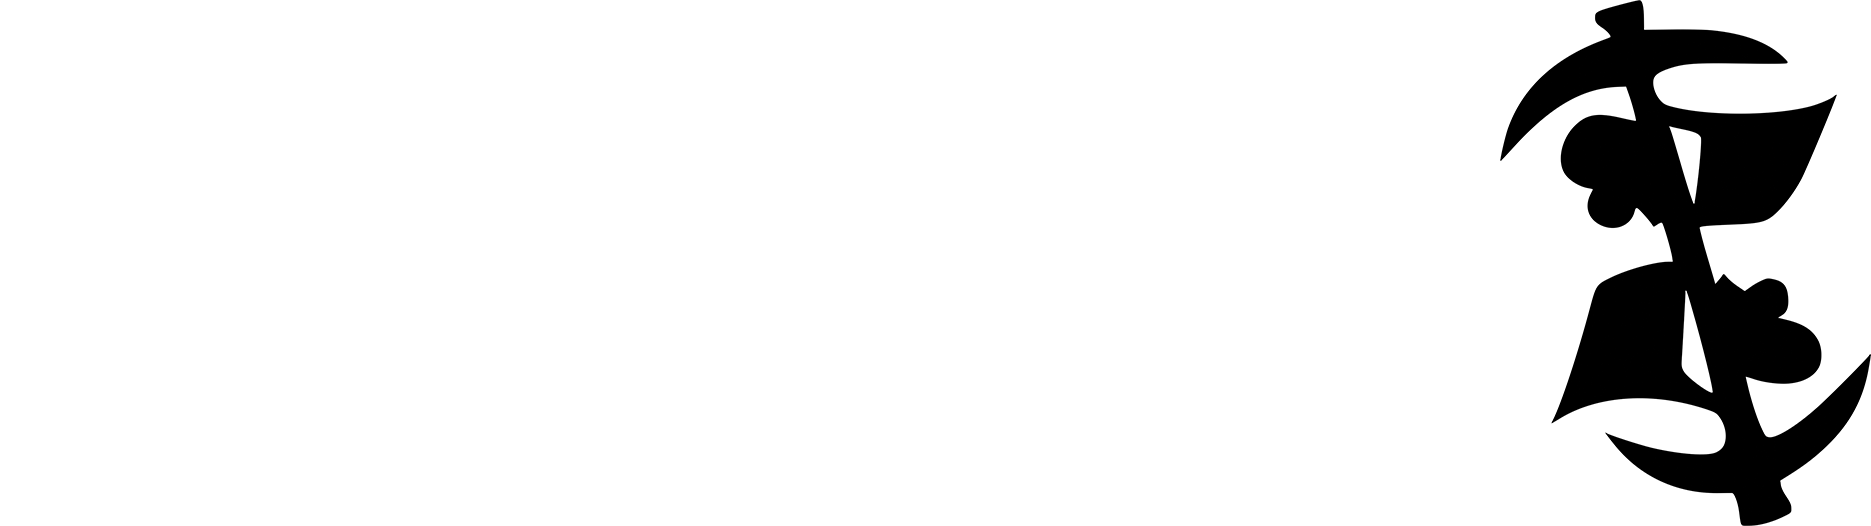 Okuafo Pa